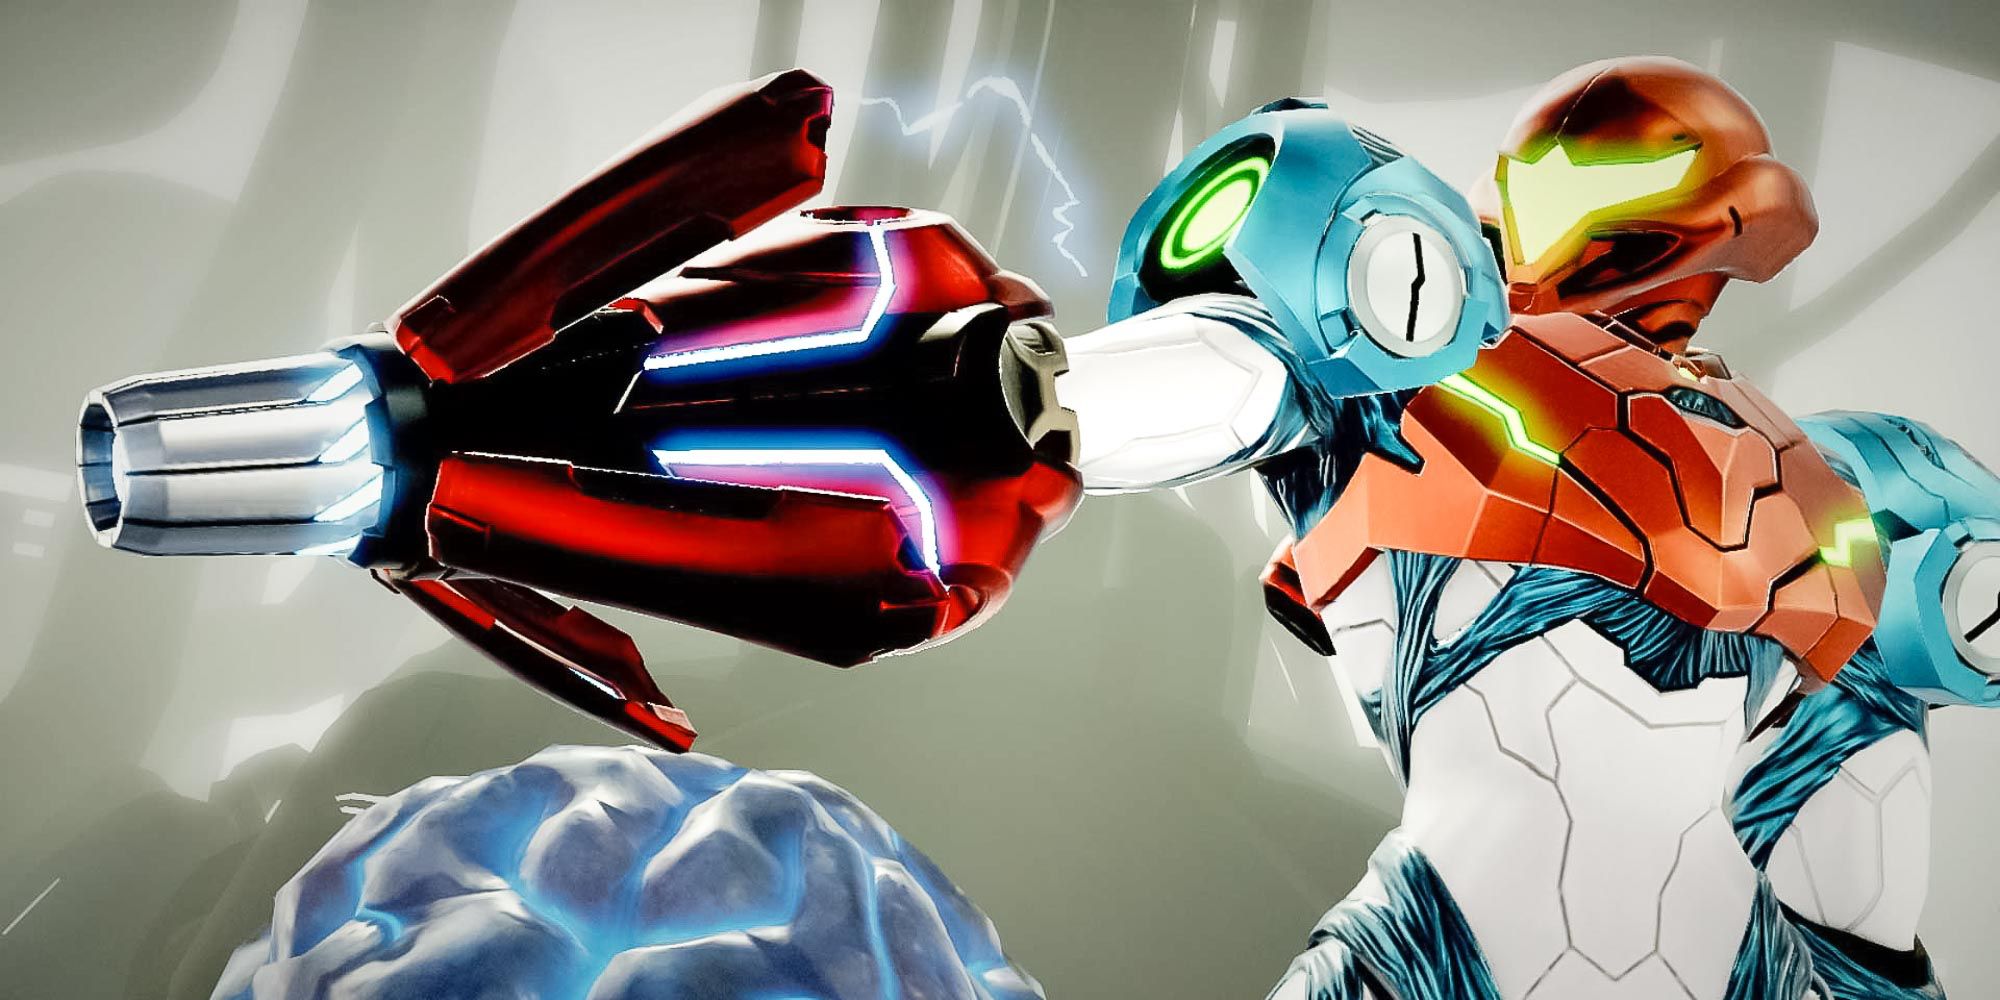 Nintendo revela Metroid Dread na E3 2021, continuação de Metroid Fusion